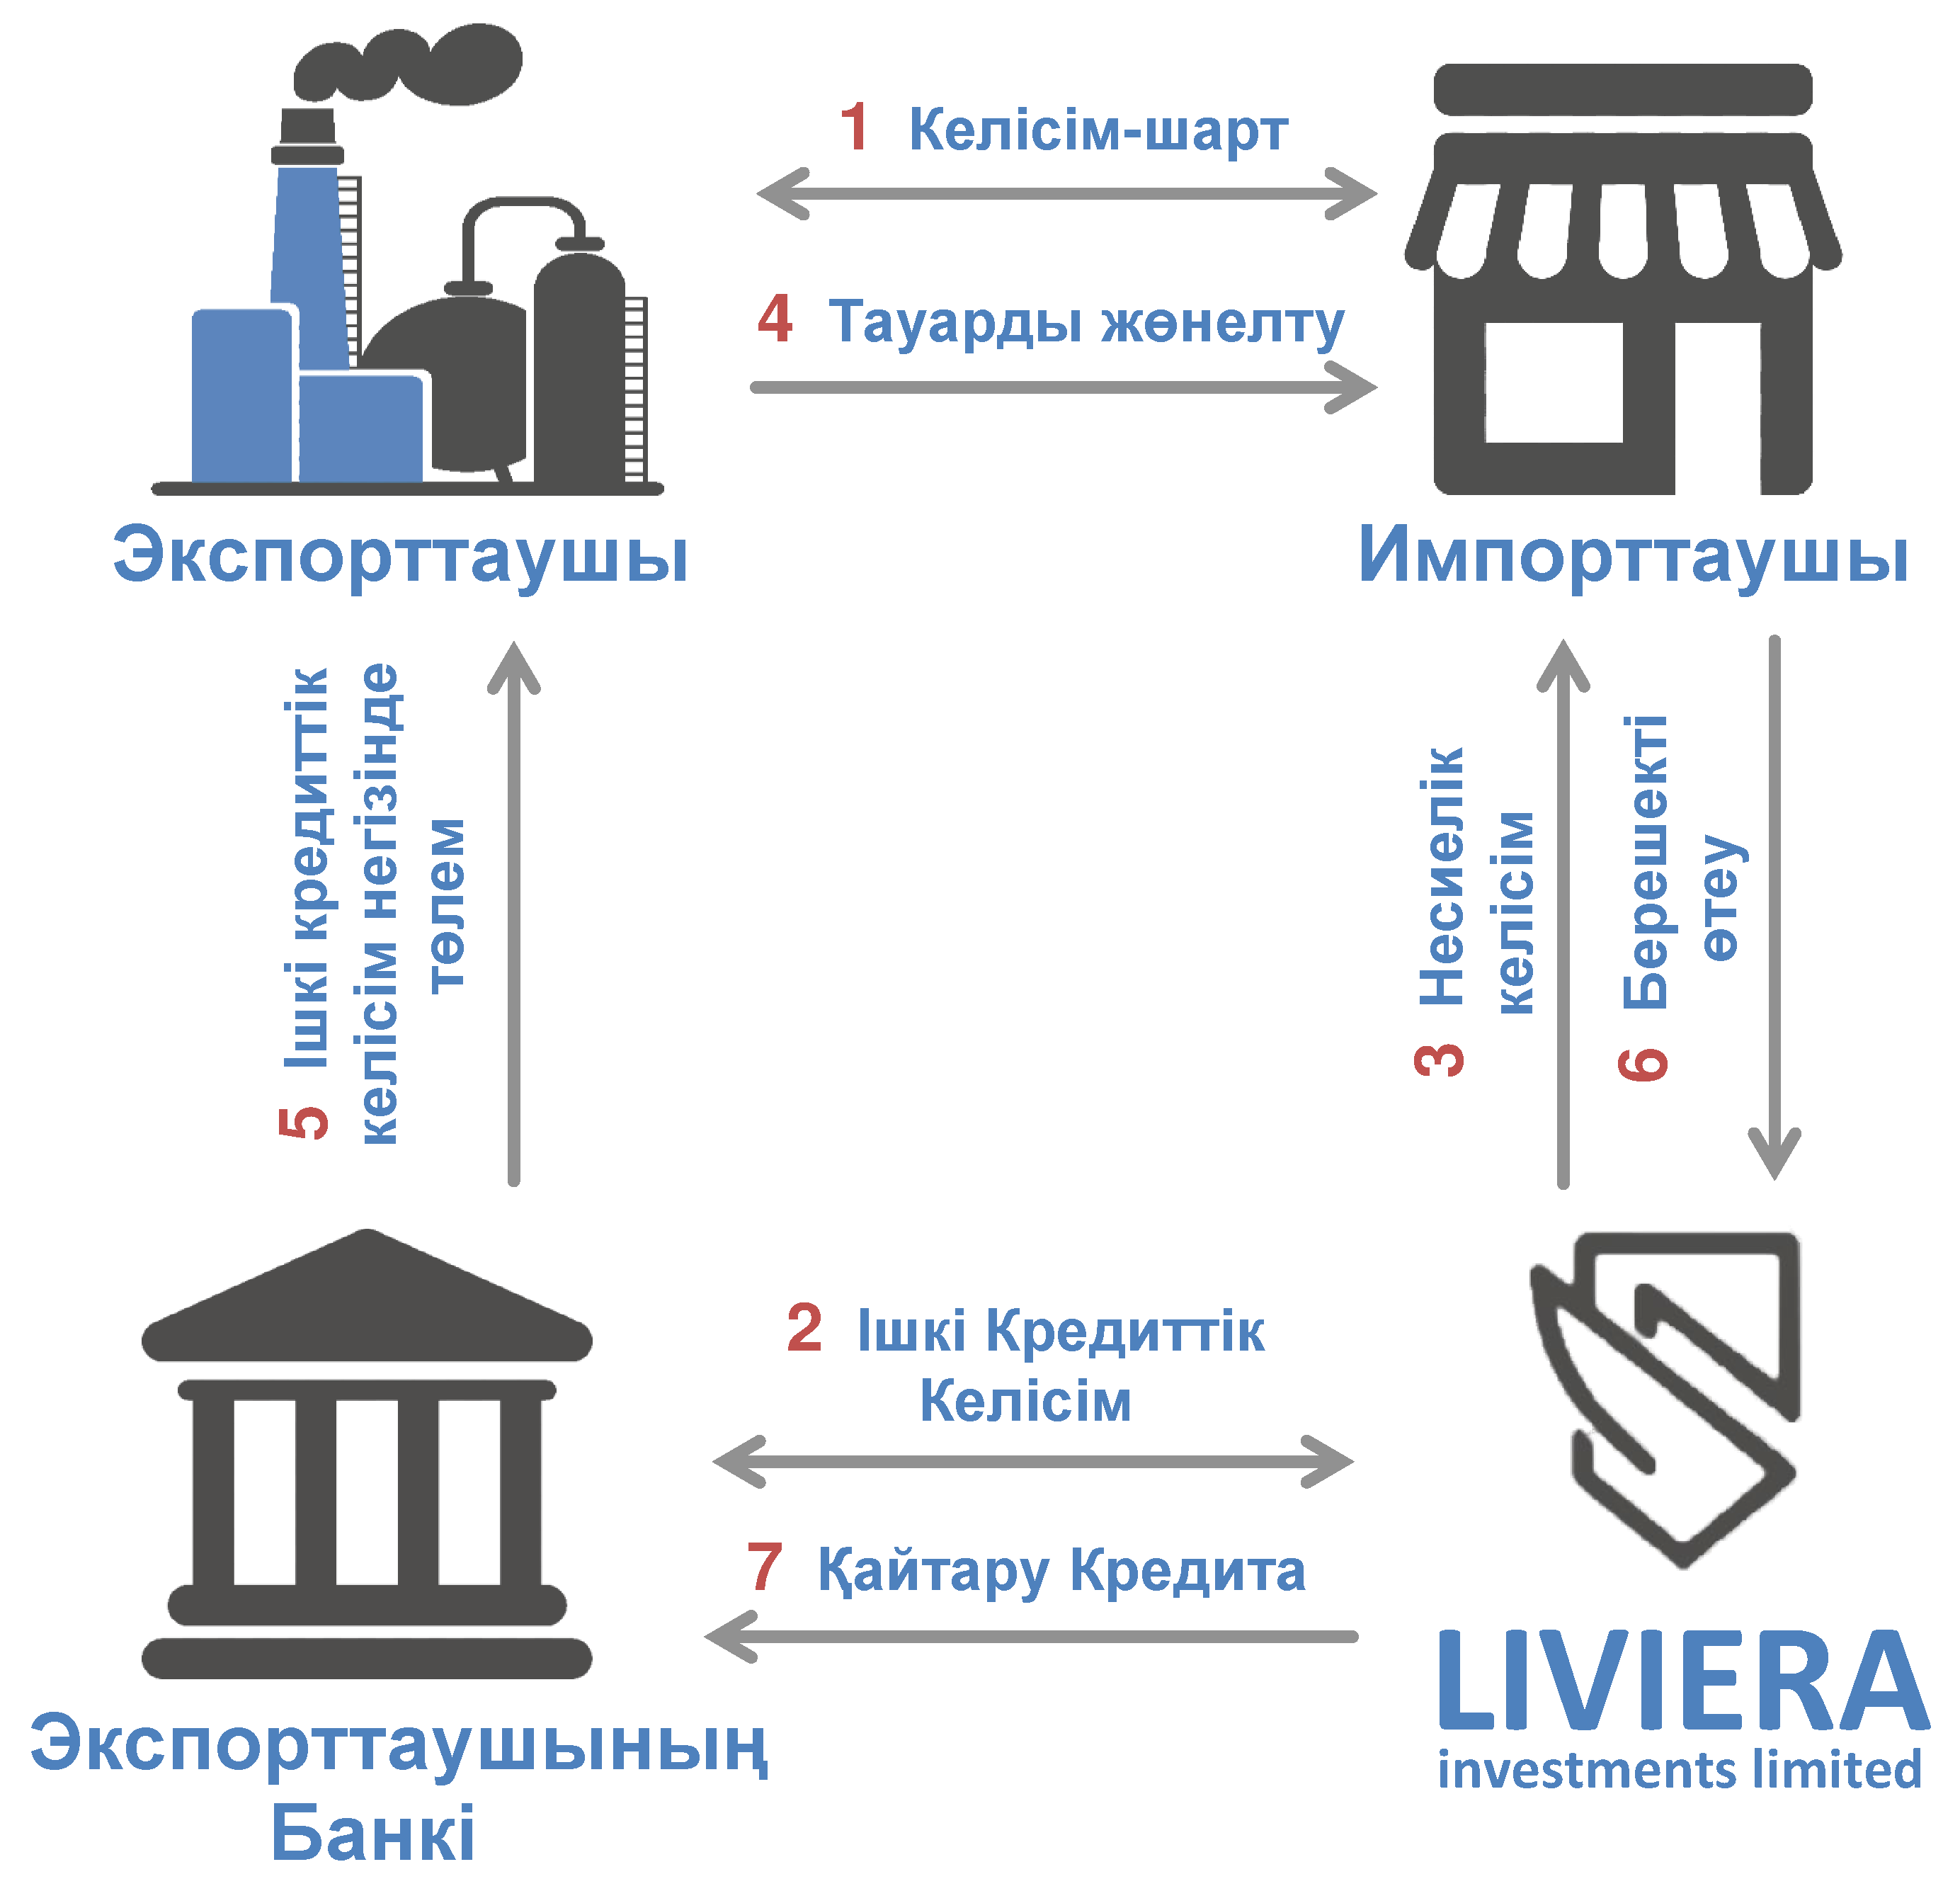 Саудалық қаржыландыру схемасы жұмыс істейді Liviera Investments Limited